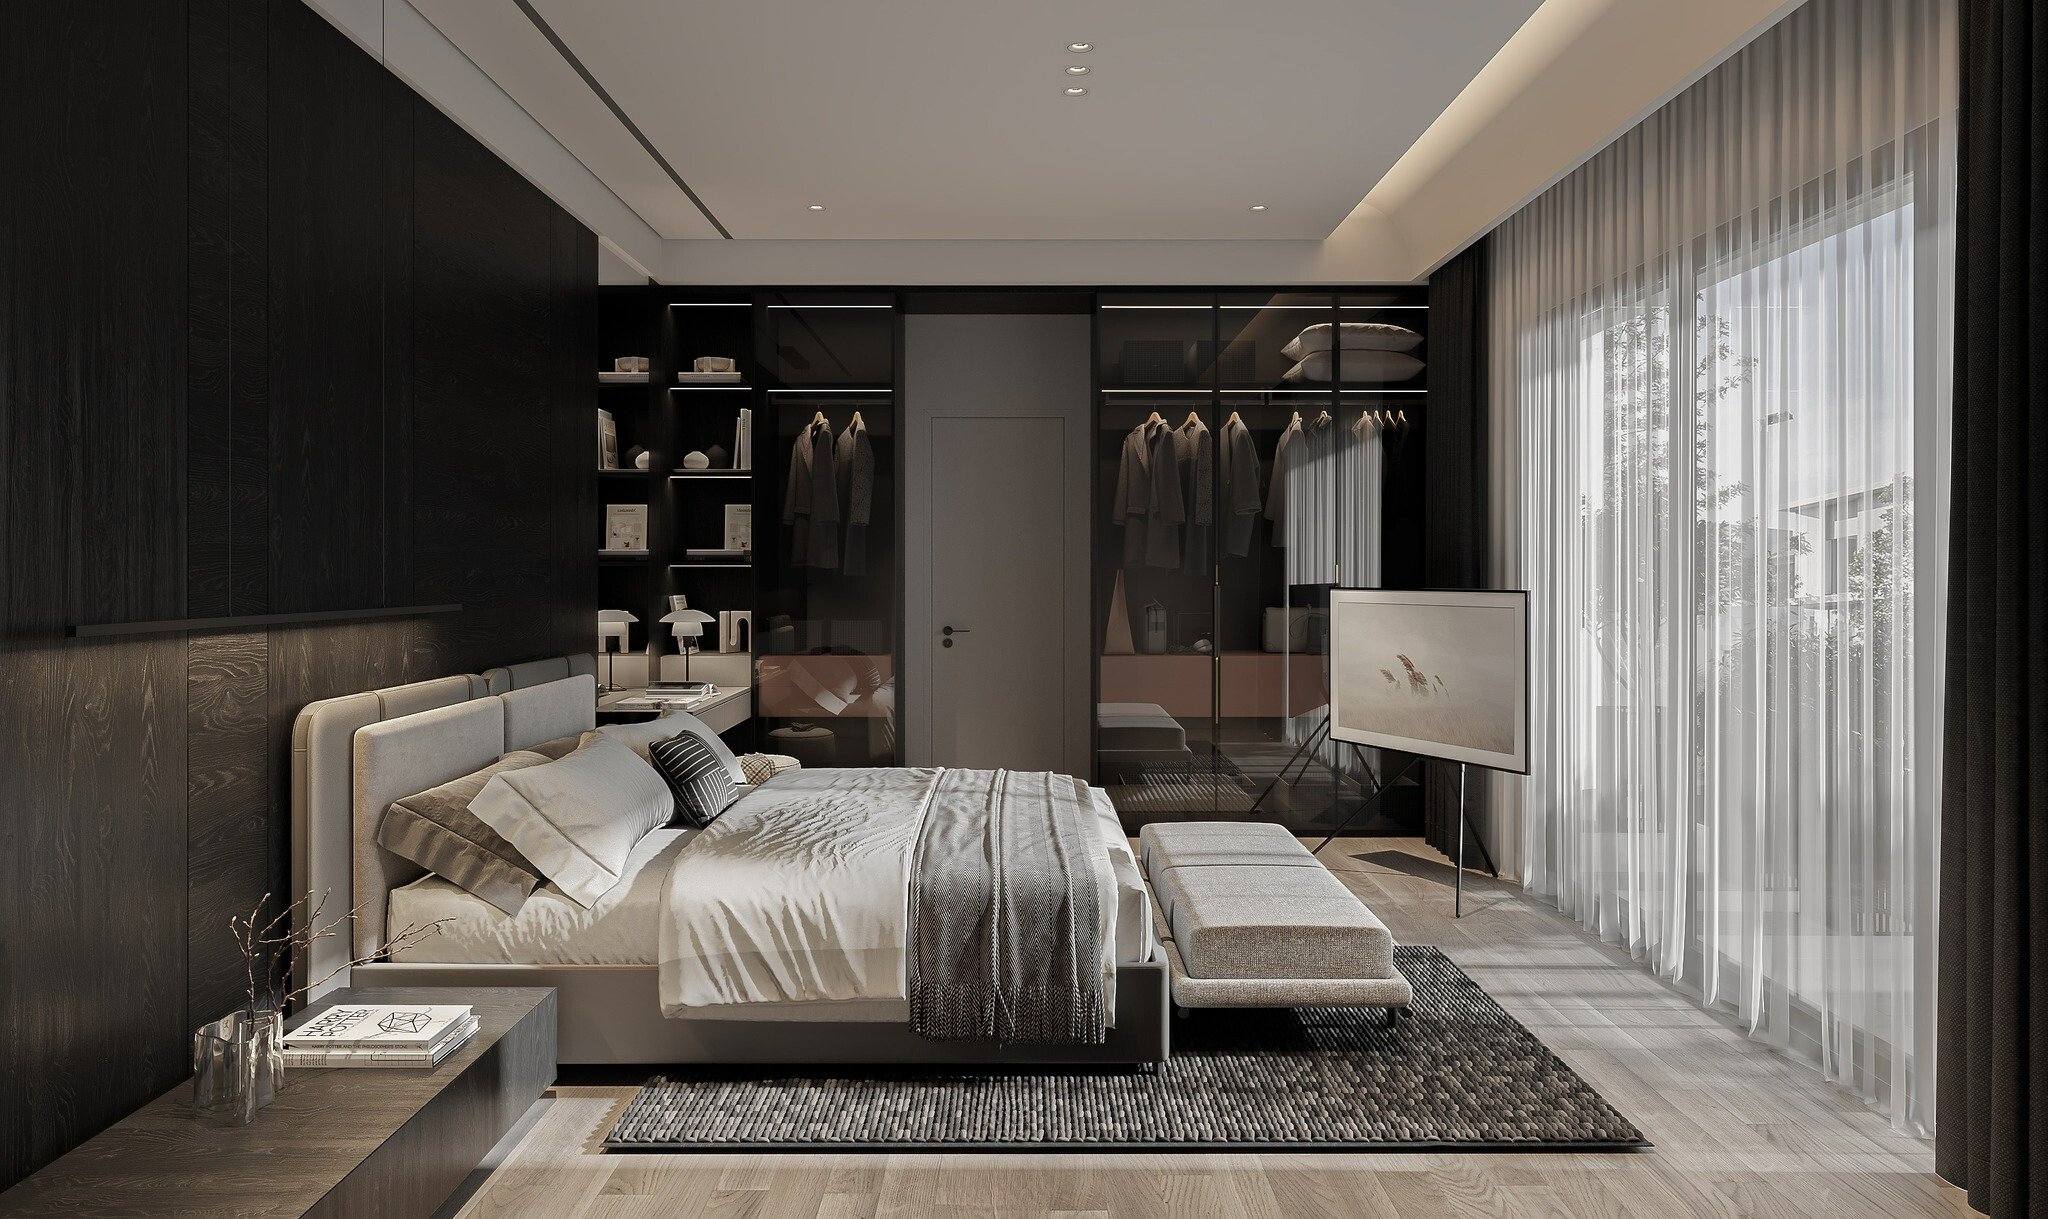 Không gian phòng ngủ được thiết kế thoáng, mở, sử dụng chất liệu gỗ tạo cảm giác ấm cúng